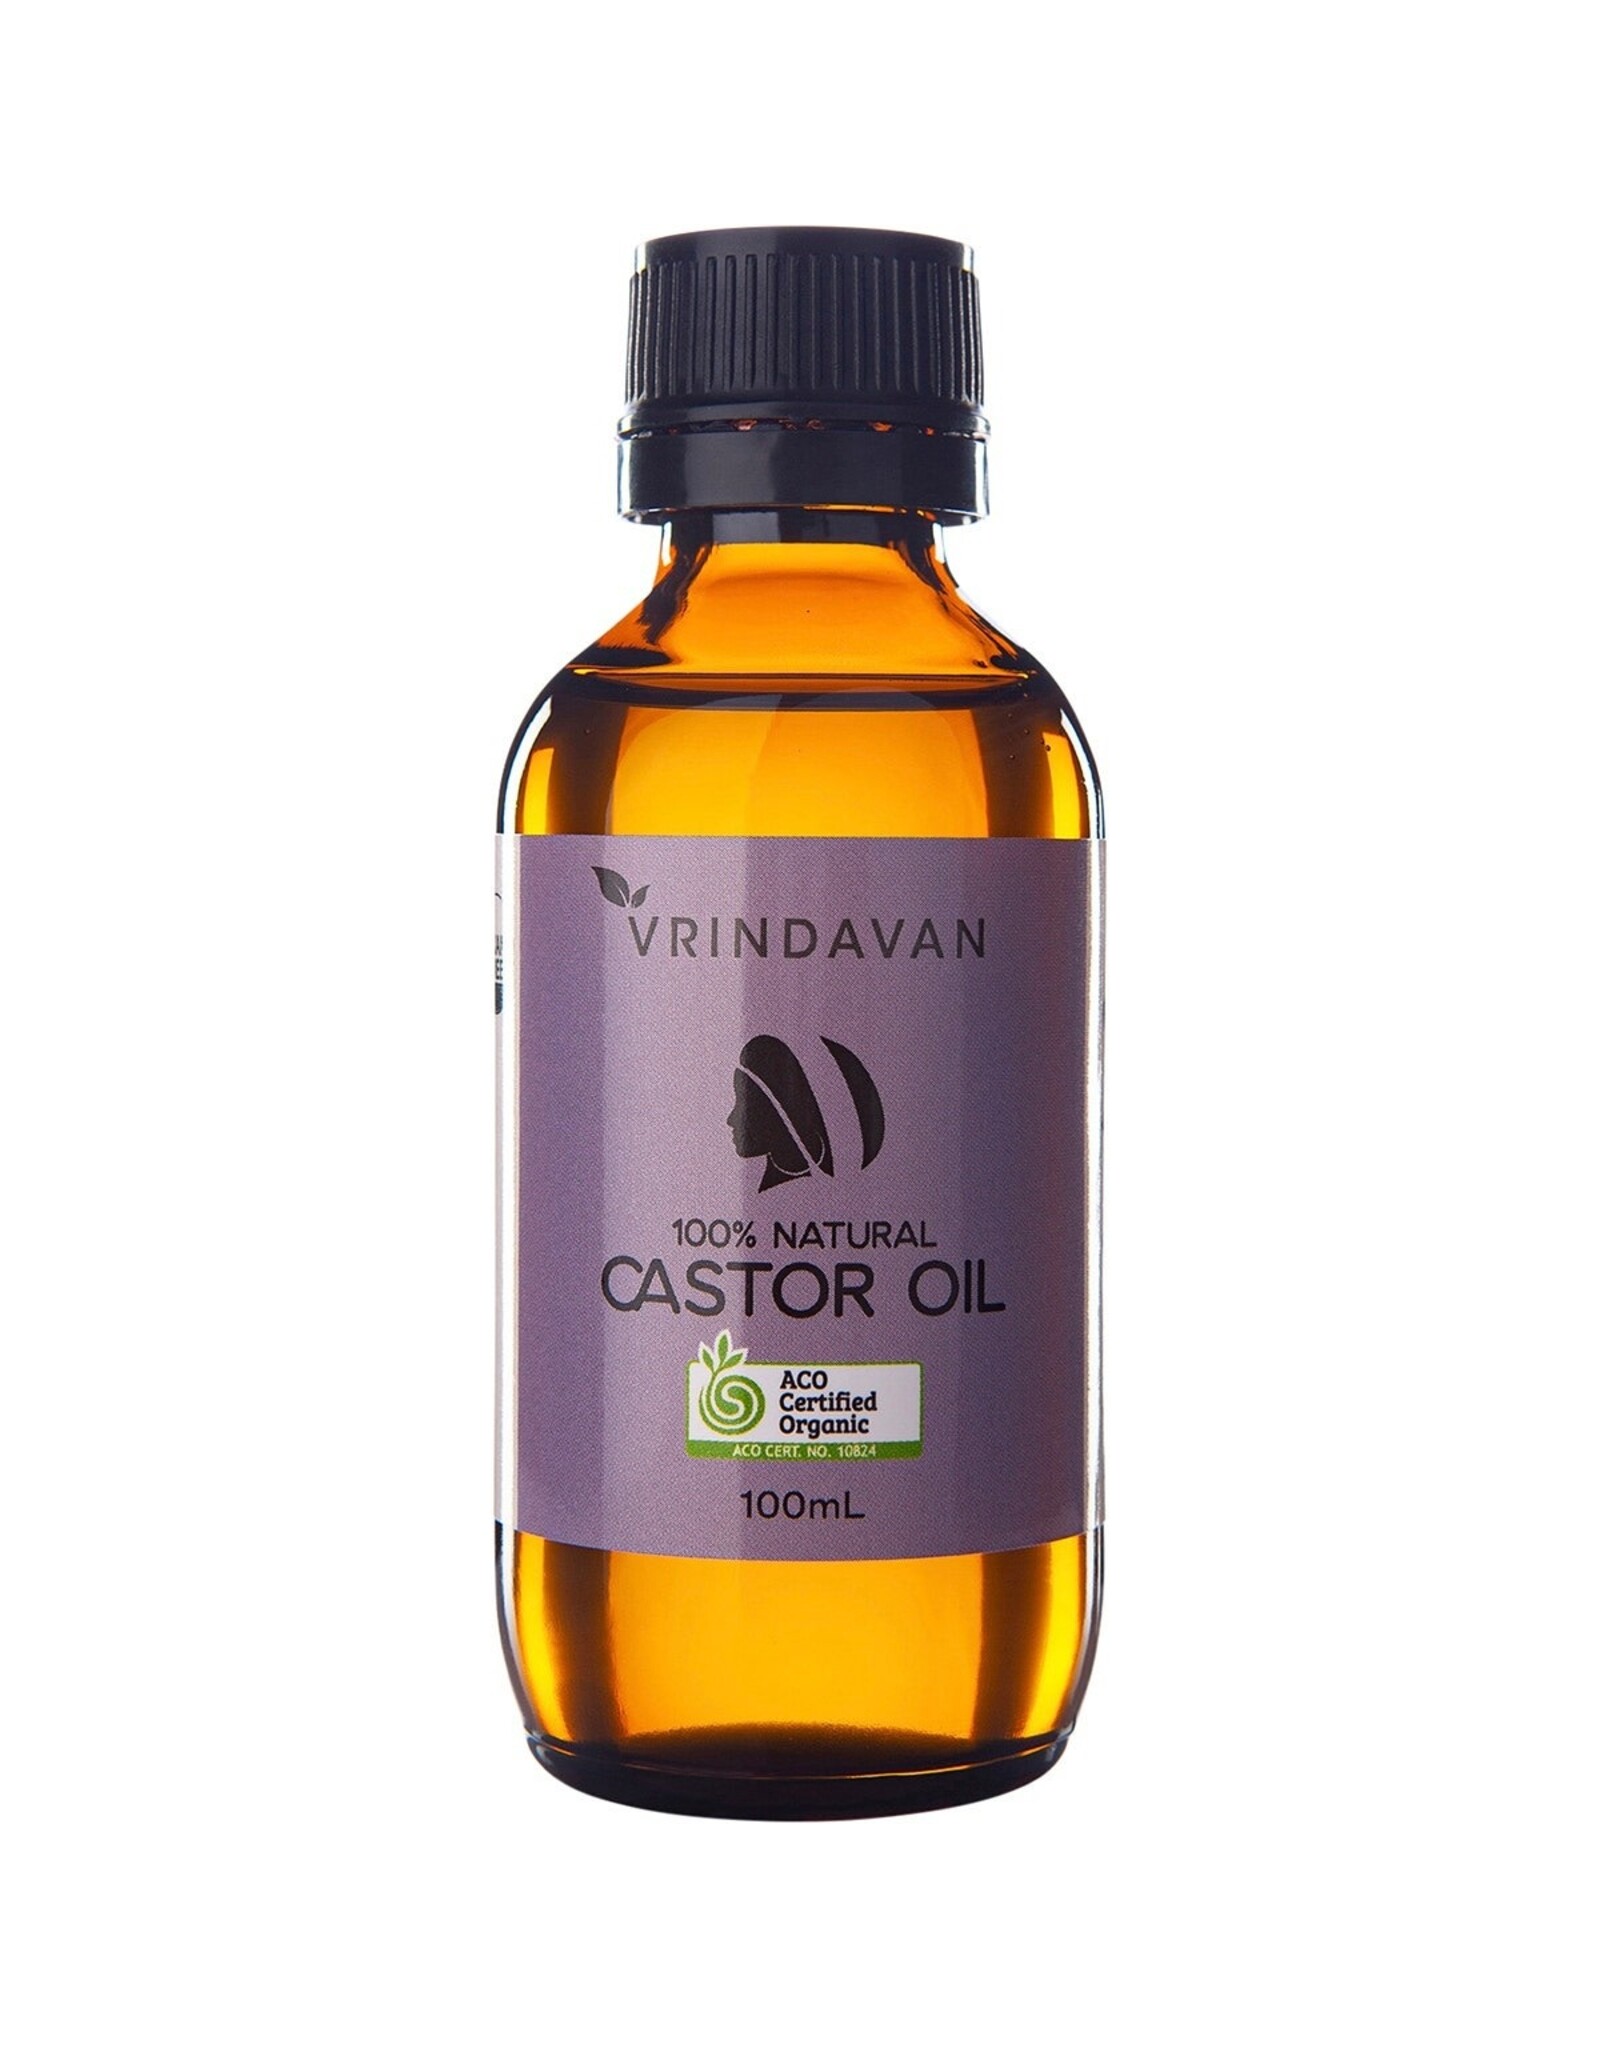 Vrindavan Organic Castor Oil 100% Natural Glass Bottle 100ml